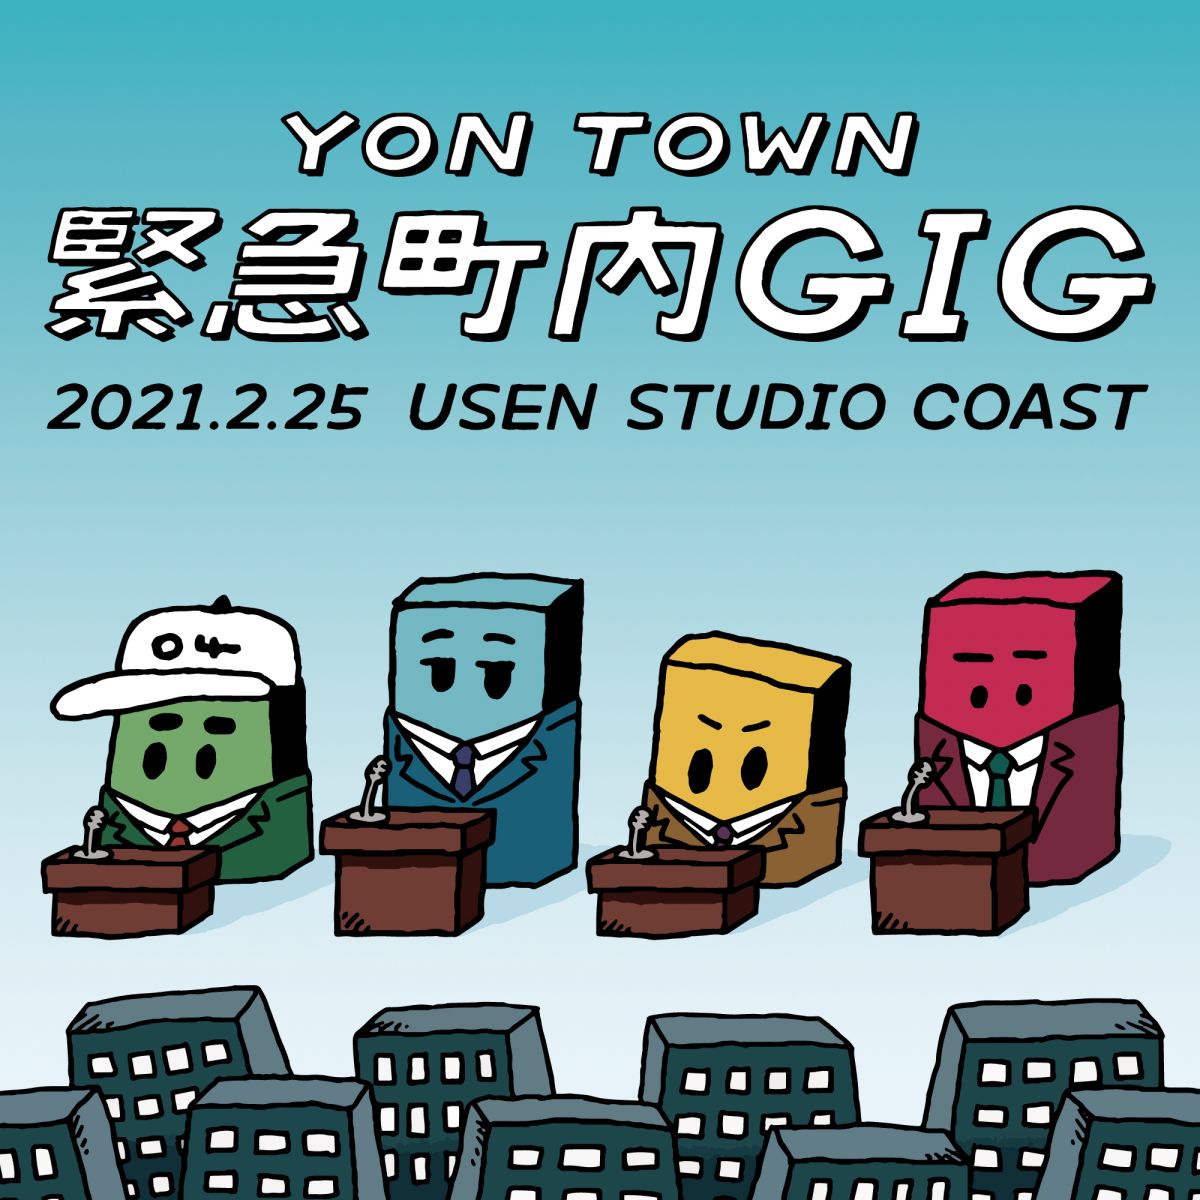 オフィシャルファンサイト「YON TOWN」会員限定イベント「YON TOWN 緊急町内GIG」開催決定！チケット受付は2/14(日)まで！ 